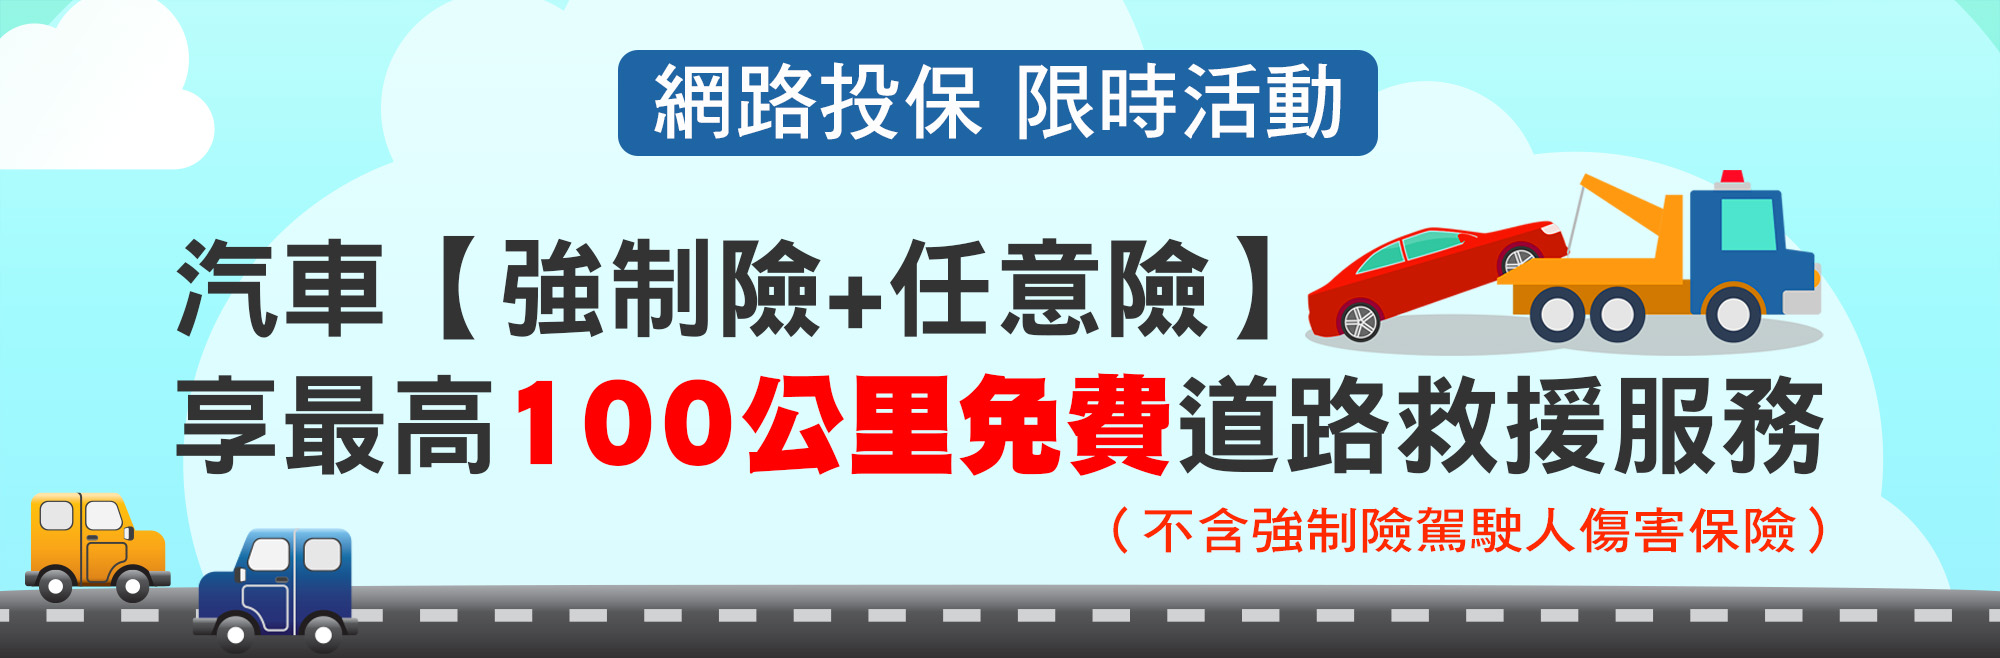 臺灣產物保險汽車道路救援服務